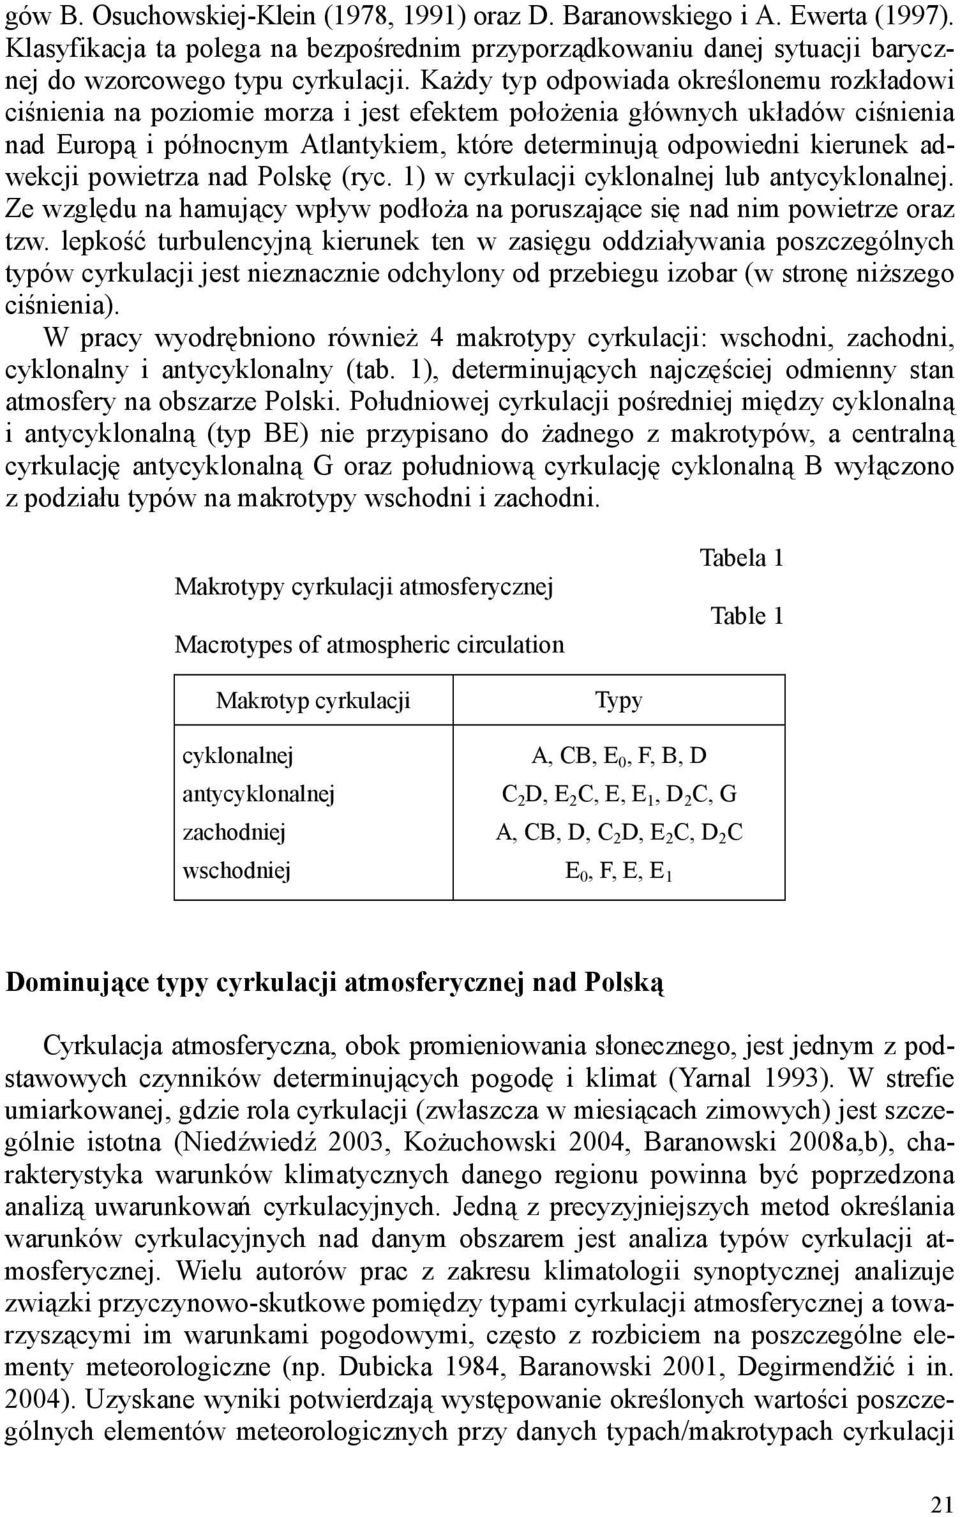 adwekcji powietrza nad Polskę (ryc. 1) w cyrkulacji cyklonalnej lub antycyklonalnej. Ze względu na hamujący wpływ podłoŝa na poruszające się nad nim powietrze oraz tzw.